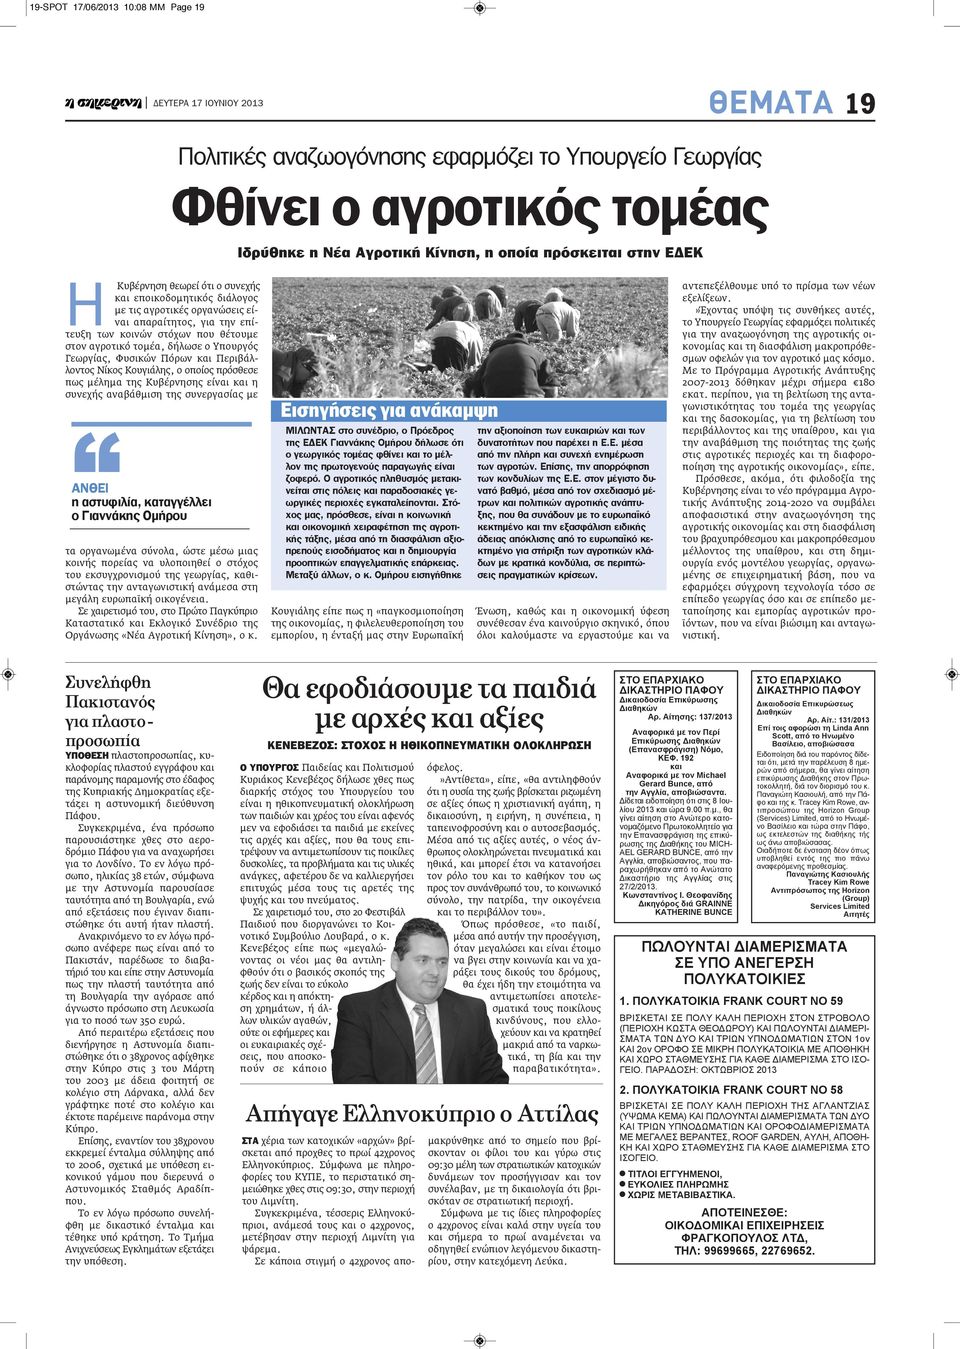 Γεωργίας, Φυσικών Πόρων και Περιβάλλοντος Νίκος Κουγιάλης, ο οποίος πρόσθεσε πως μέλημα της Κυβέρνησης είναι και η συνεχής αναβάθμιση της συνεργασίας με ανθει η αστυφιλία, καταγγέλλει ο Γιαννάκης